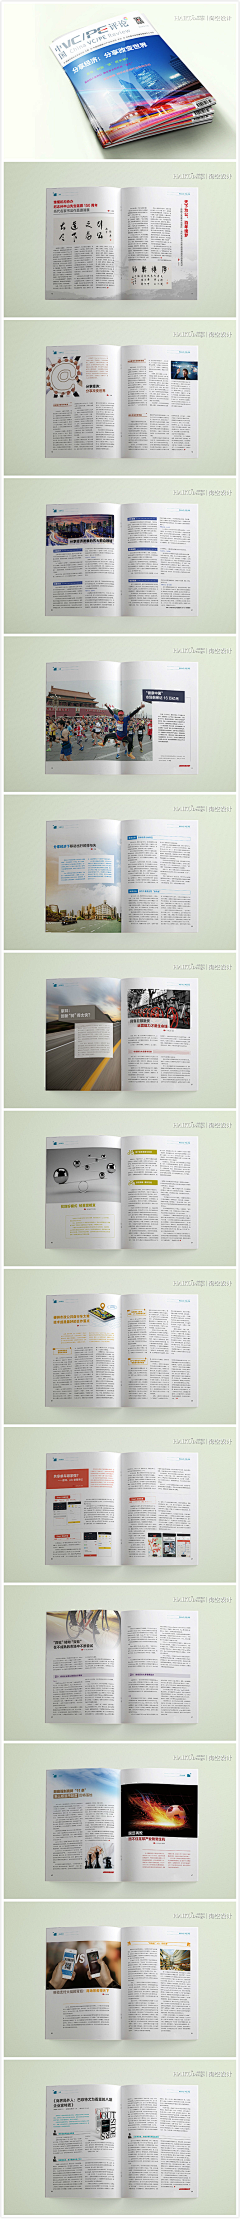 海空设计采集到内刊 杂志 画册设计 宣传册设计案例 | 海空设计出品